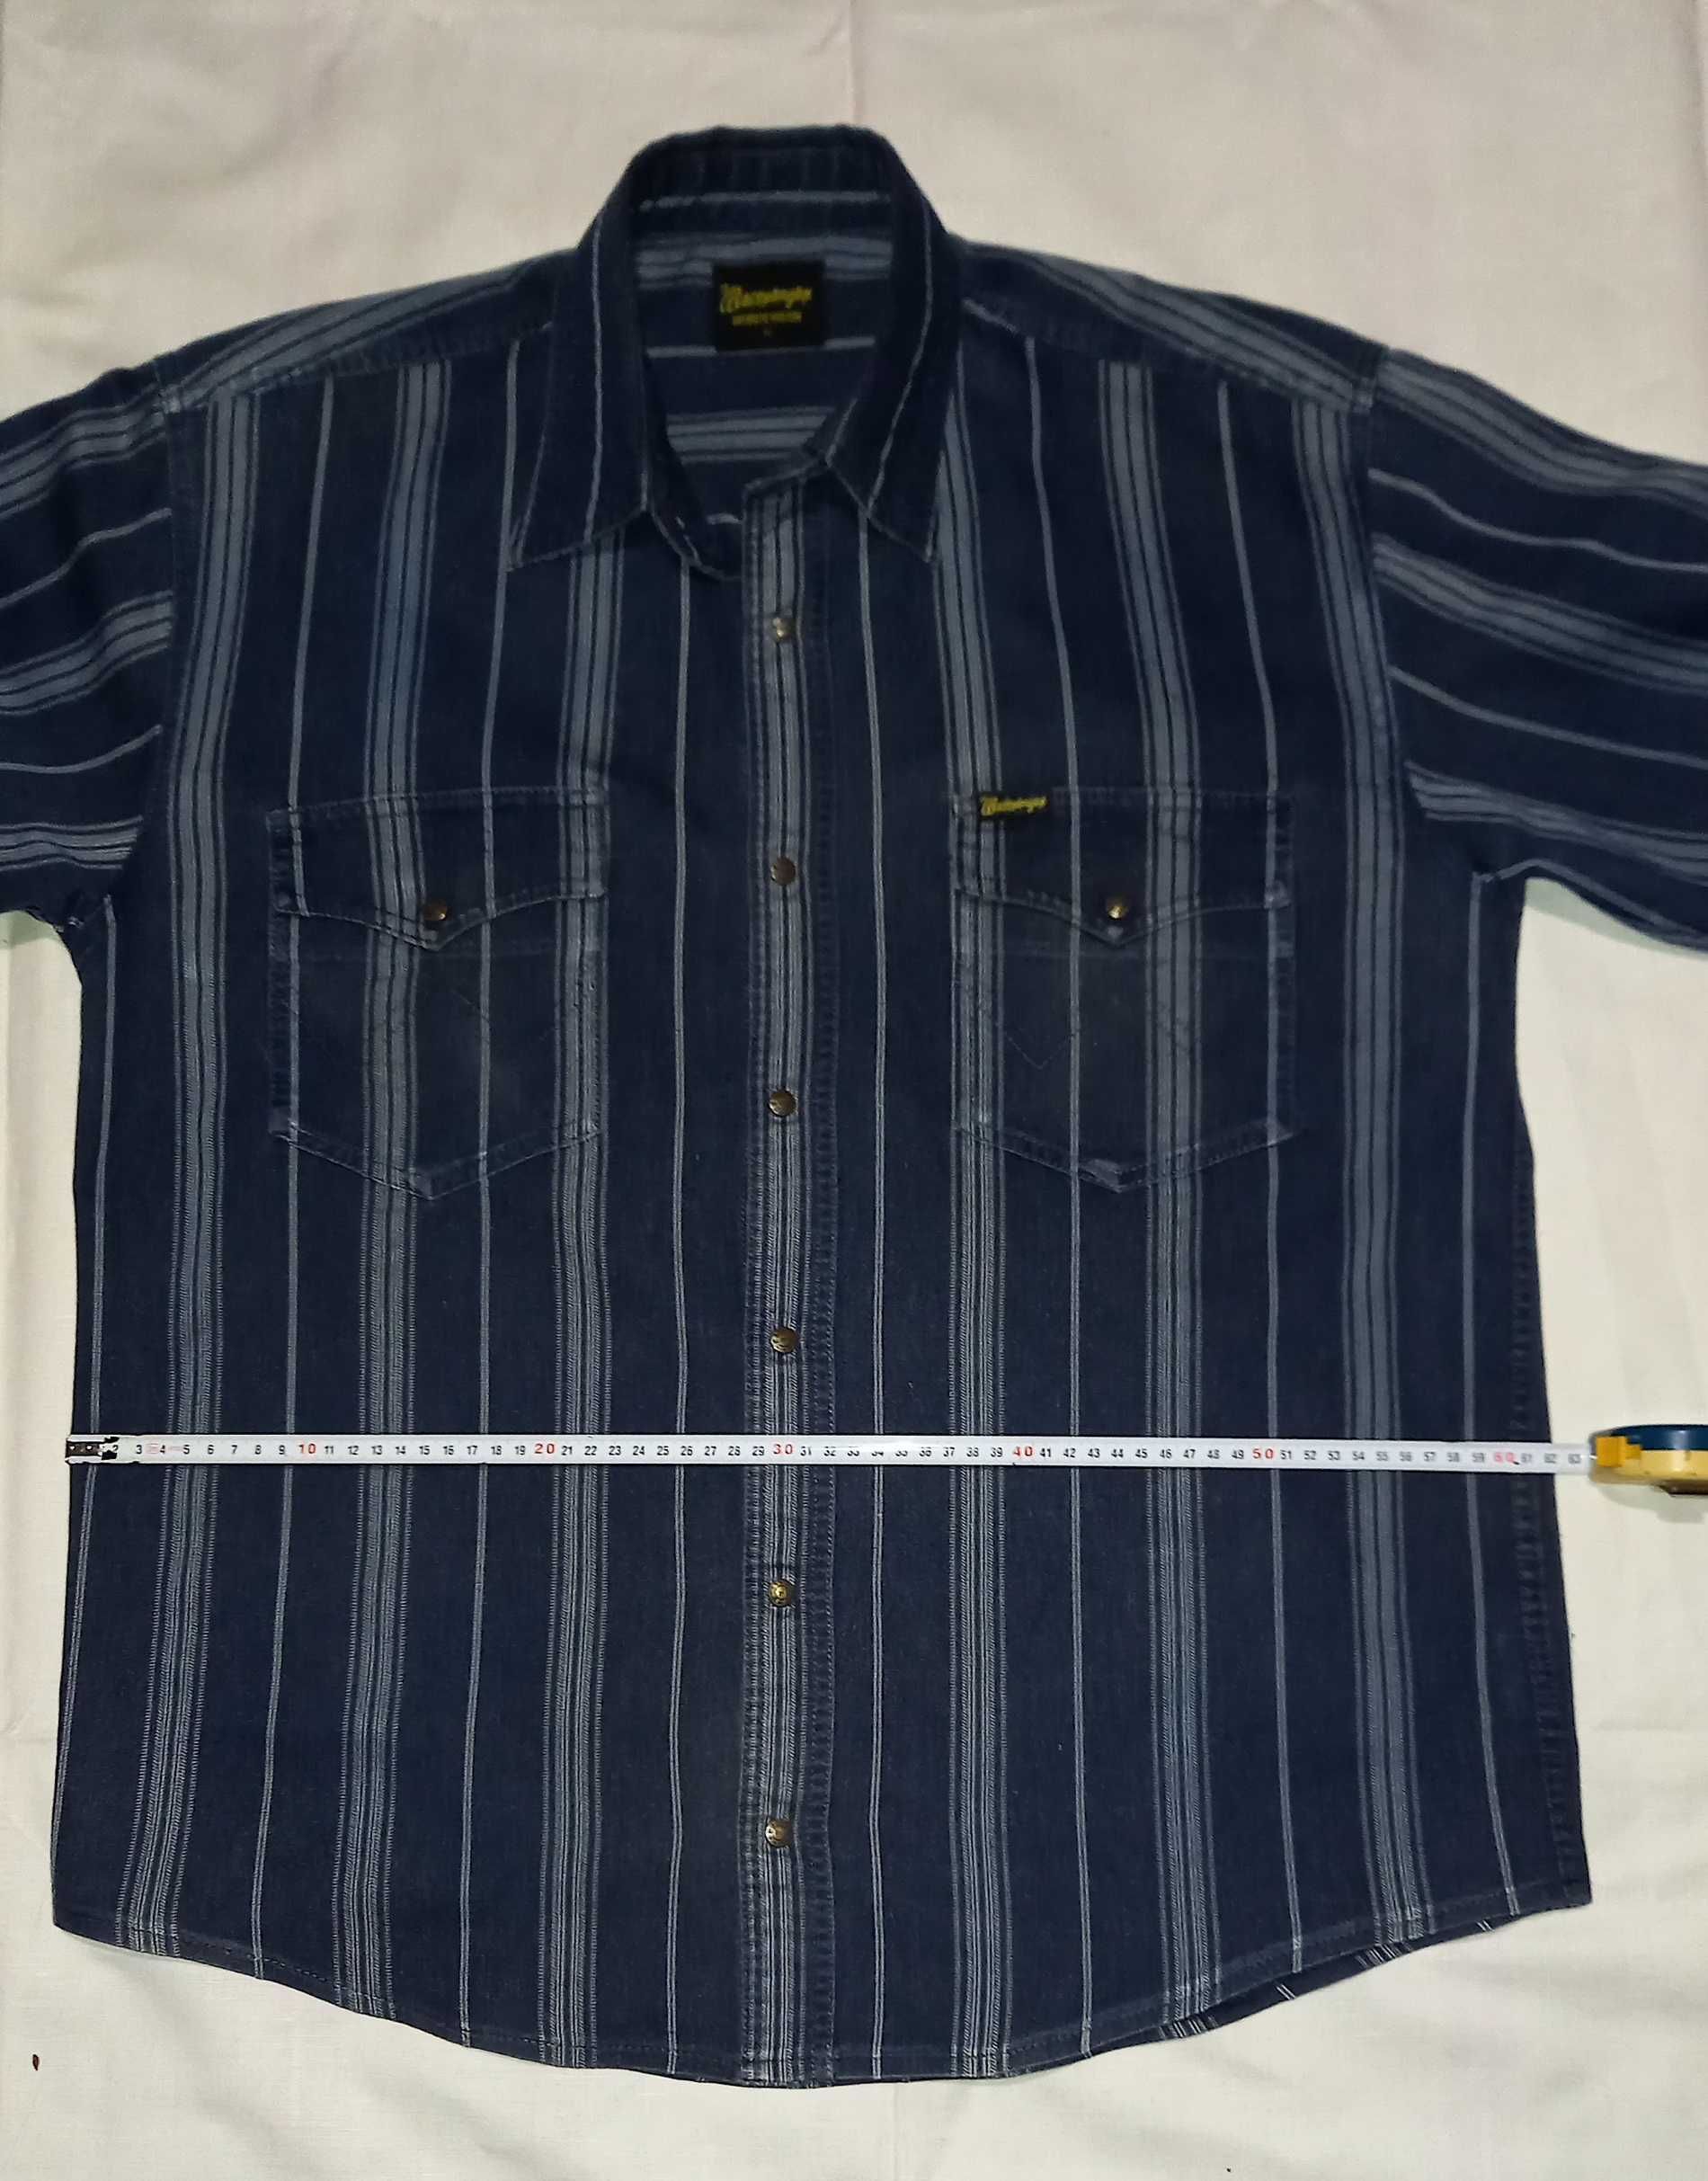 Турецкая джинсовая рубашка Westrenger размер ХL (54)